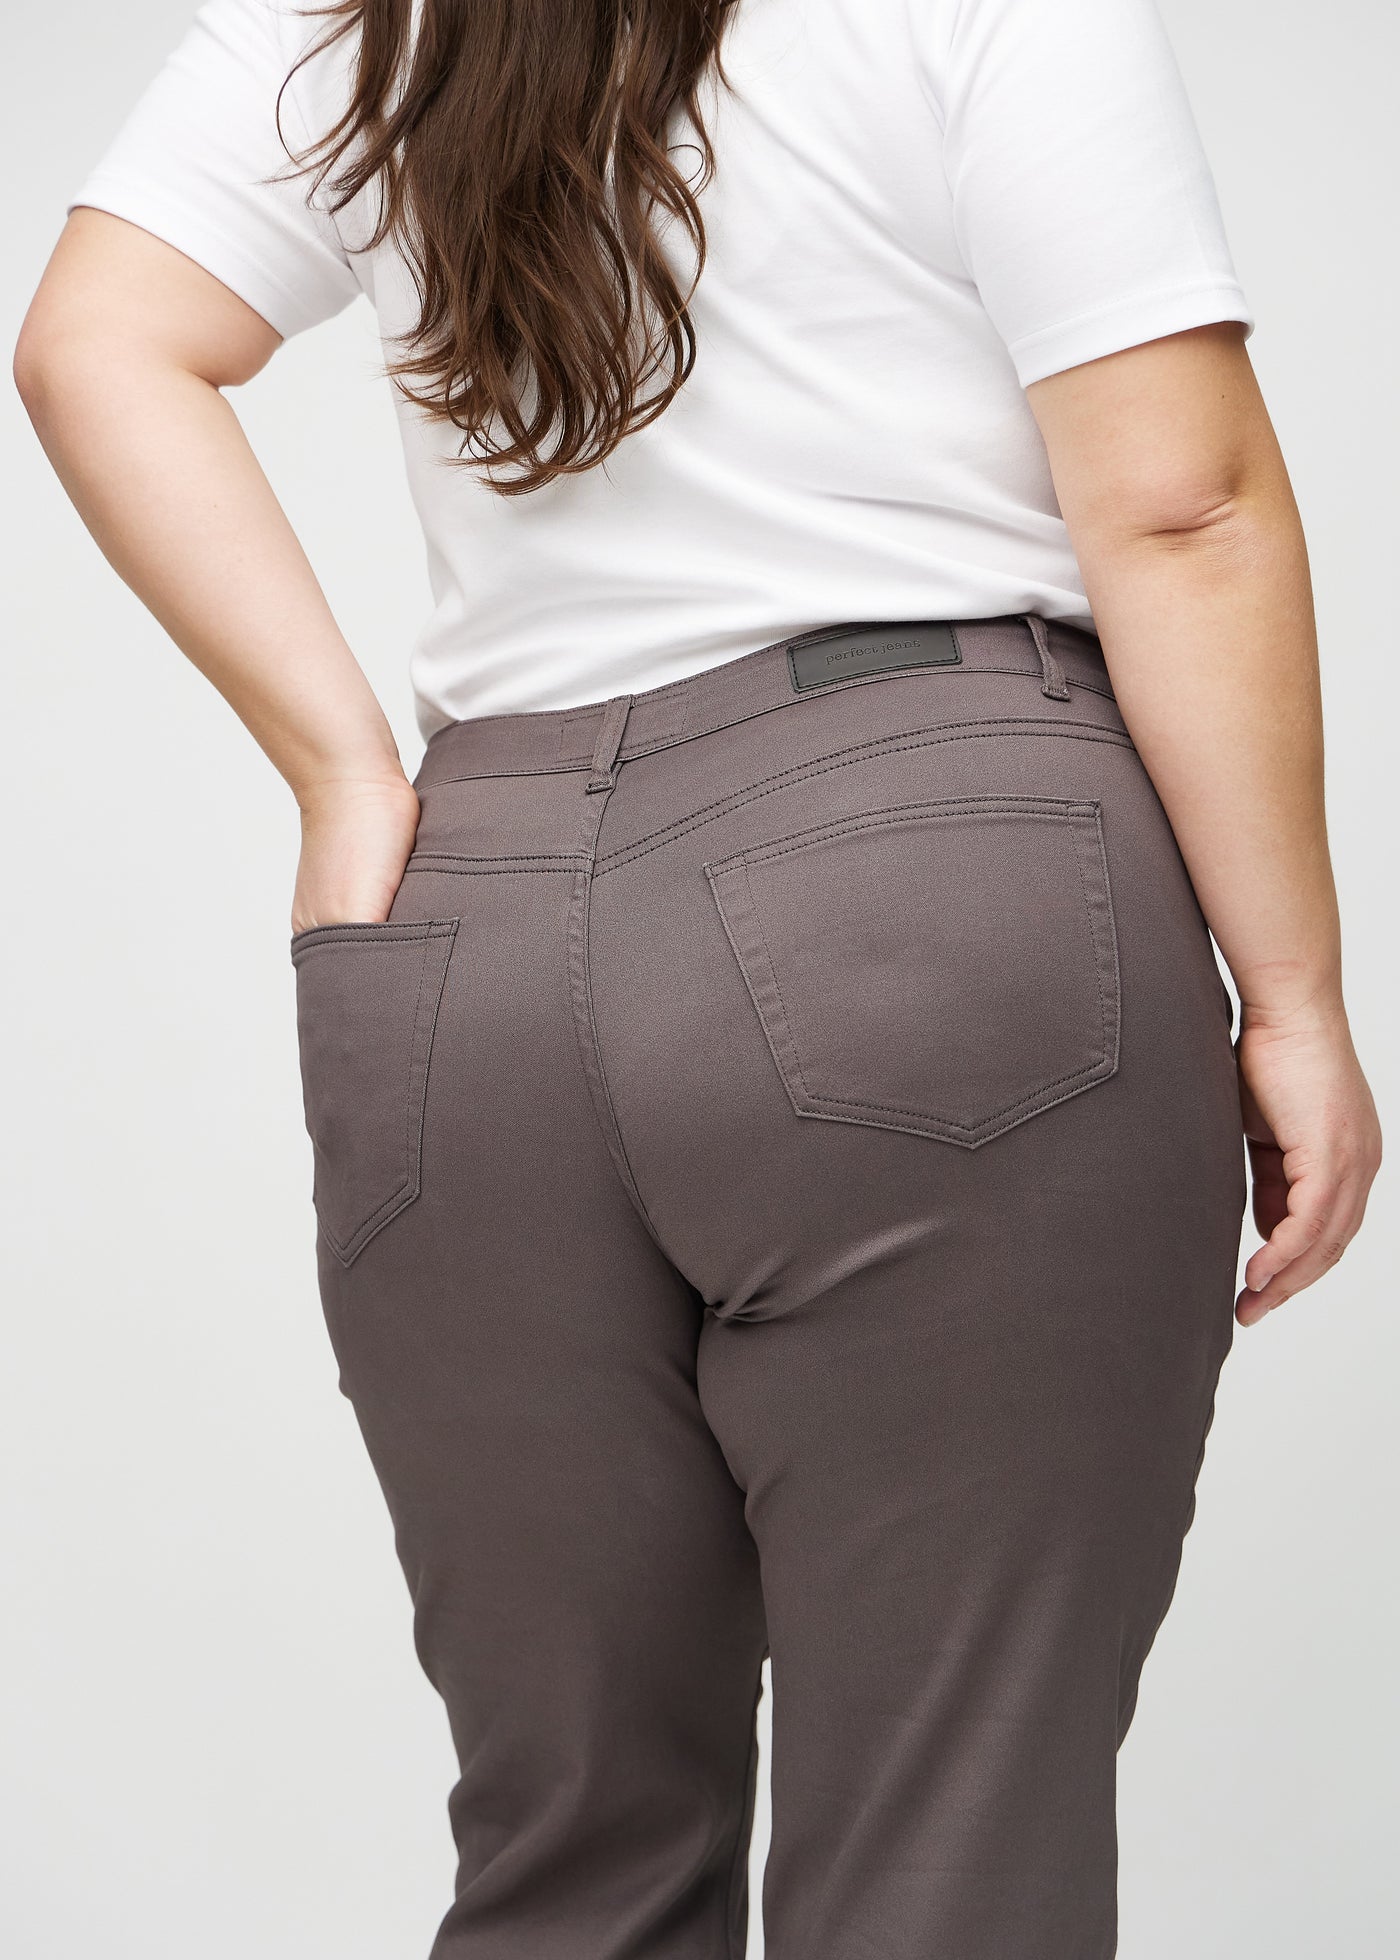 Gråbrune regular jeans set bagfra tæt på en plus-size model for at vise detaljer.